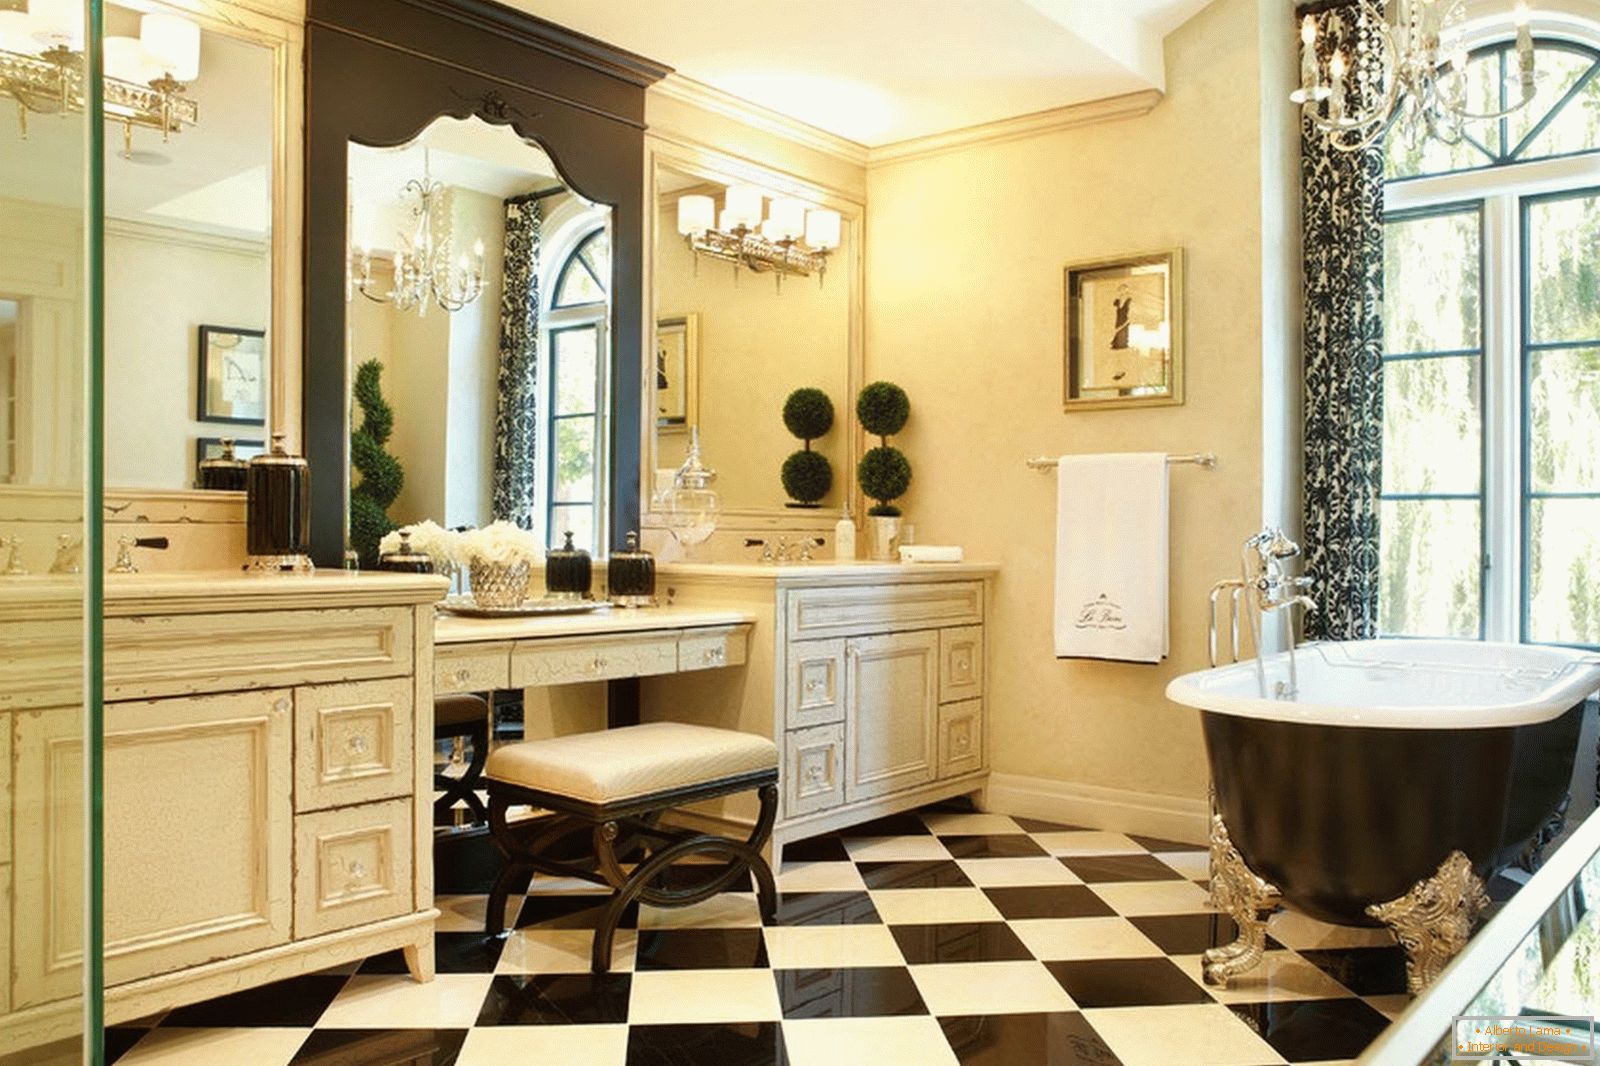 Schachboden im Badezimmer in einer klassischen Art